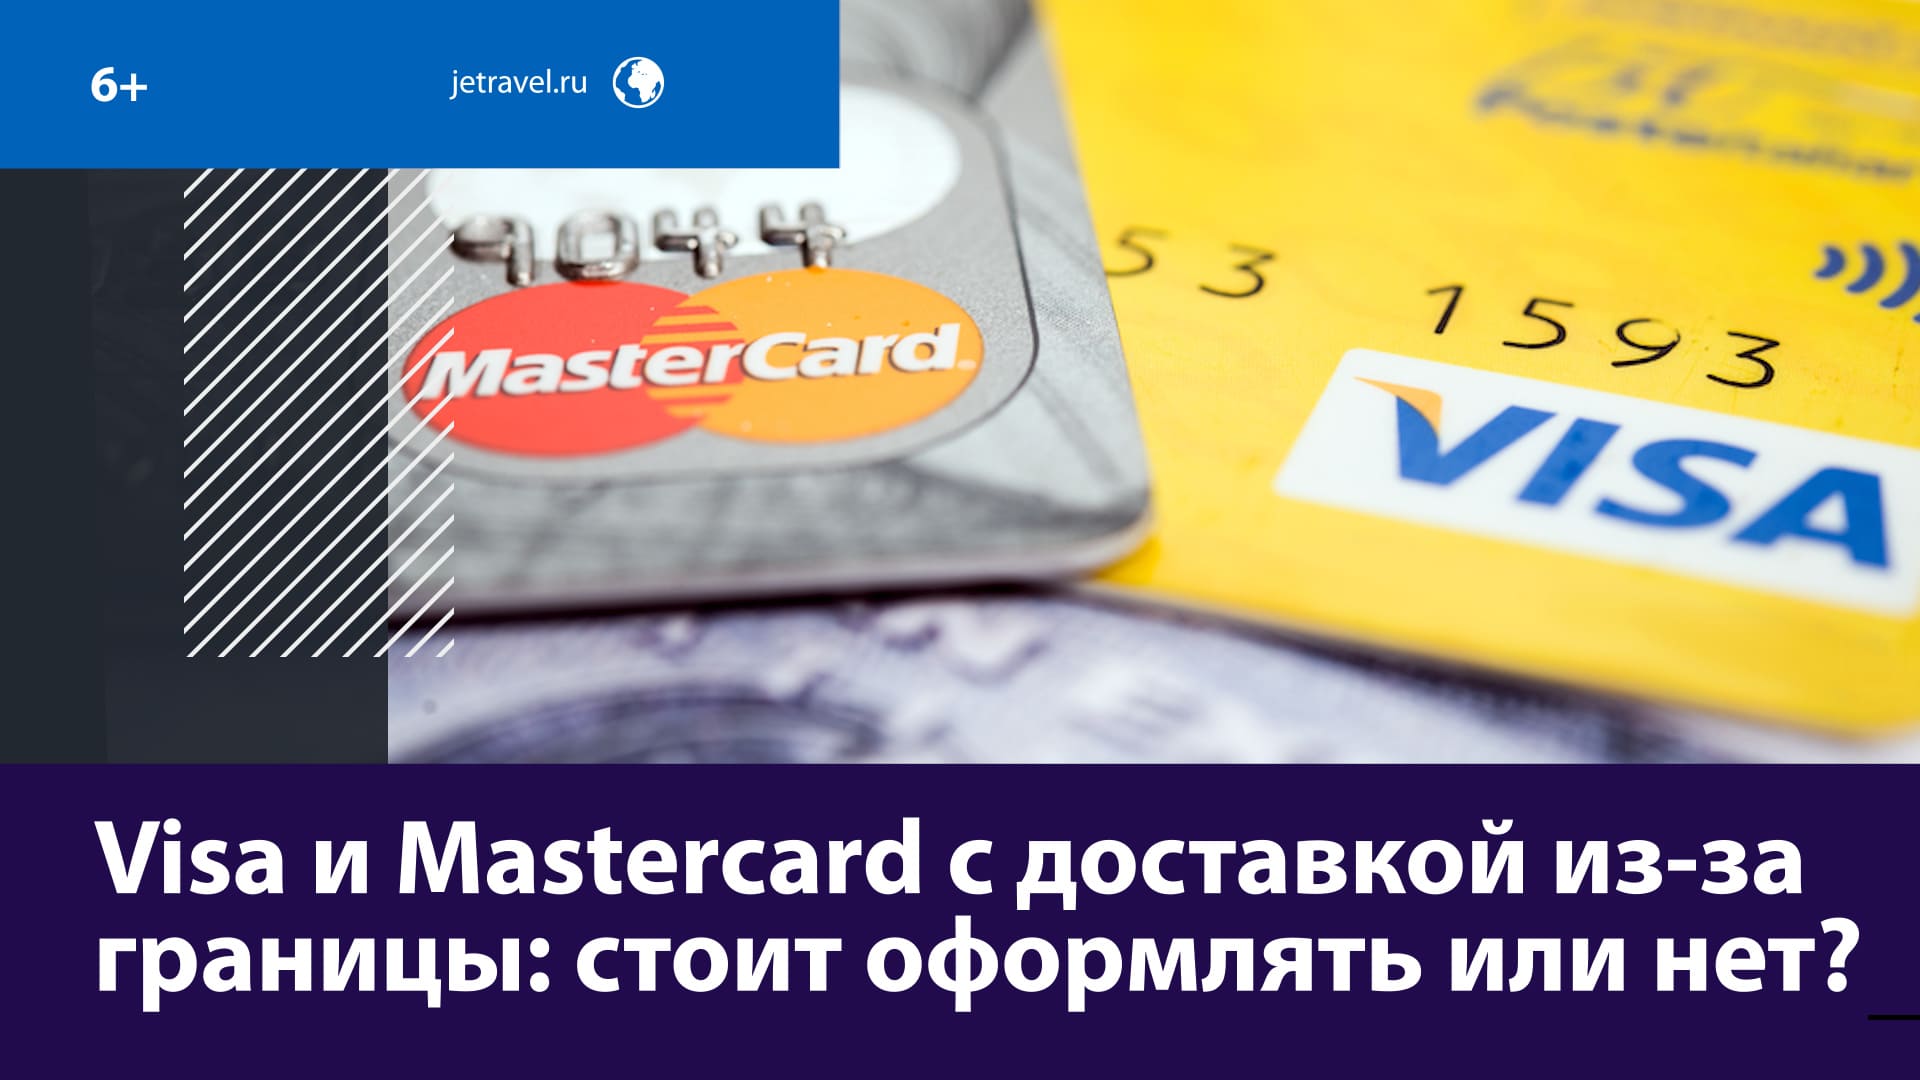 Москвичам предлагают дистанционно оформить Visa и MasterCard из зарубежных банков — Москва FM